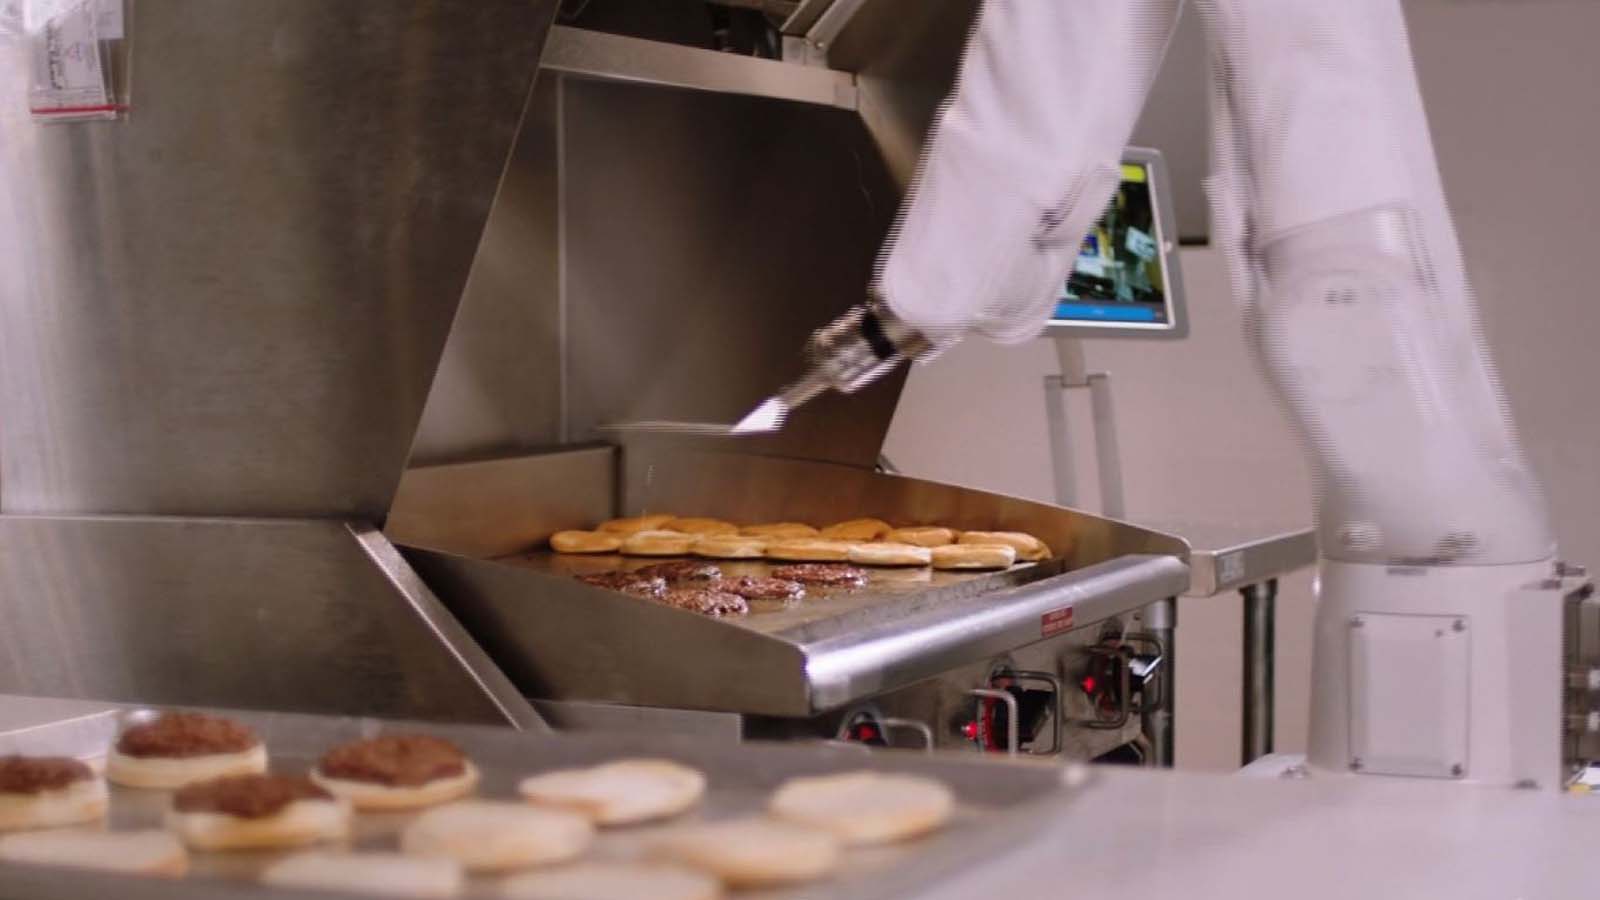 Burger-flipping robot debuts at - CNN Video